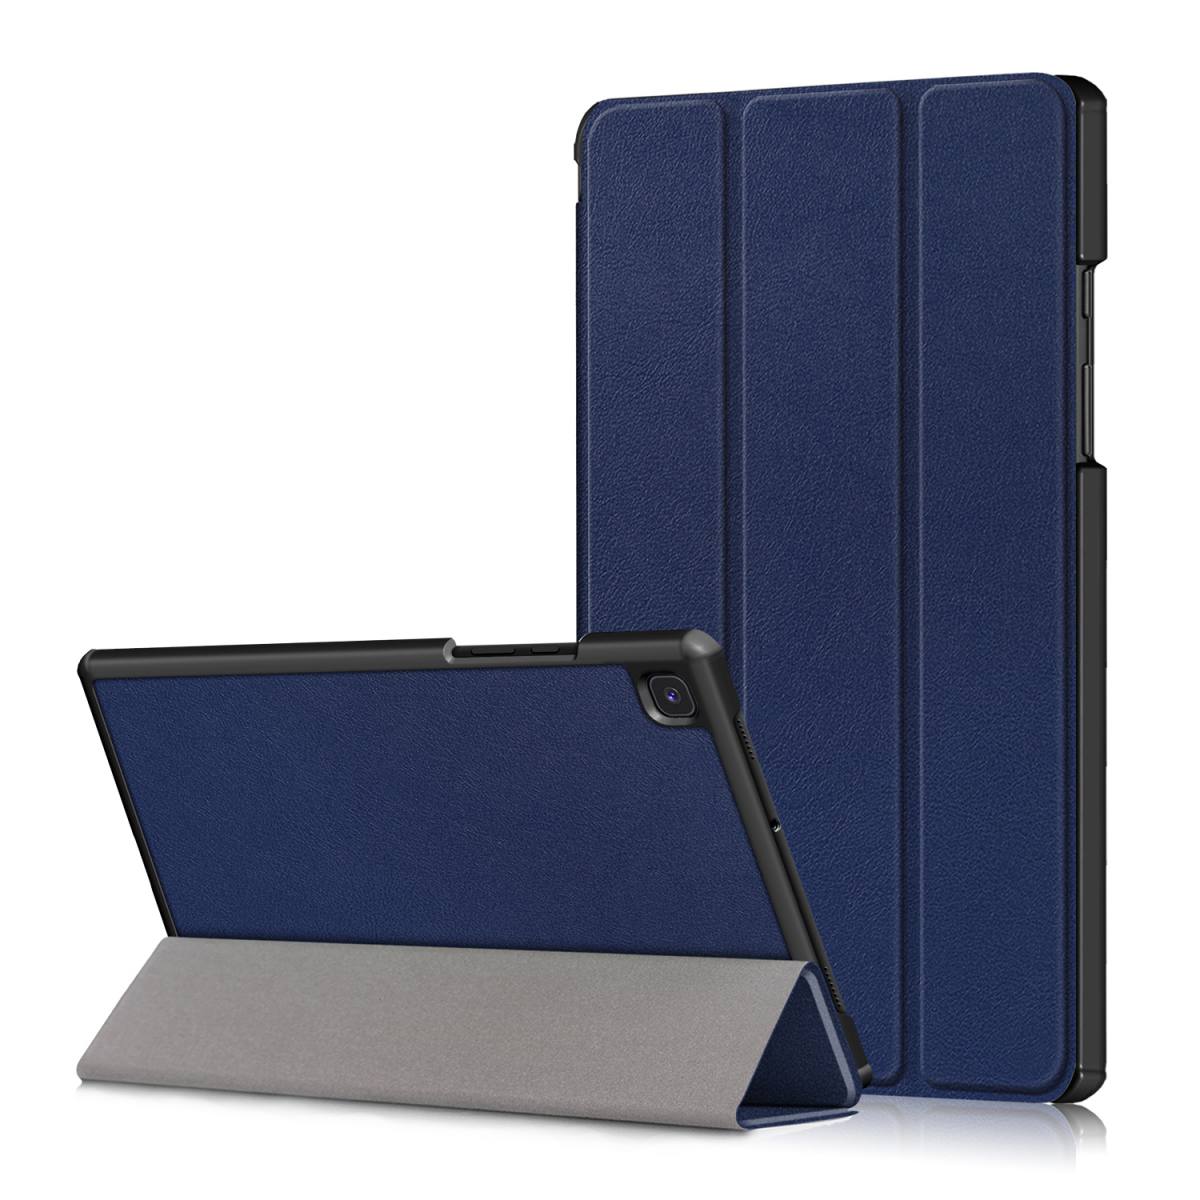 Чехол IT Baggage для Galaxy Tab A7 10.4 2020 T505/T500/T507 Blue ITSSA7104-4 чехол it baggage для планшета samsung galaxy tab a7 10 4 2020 t505 t500 t507 синий